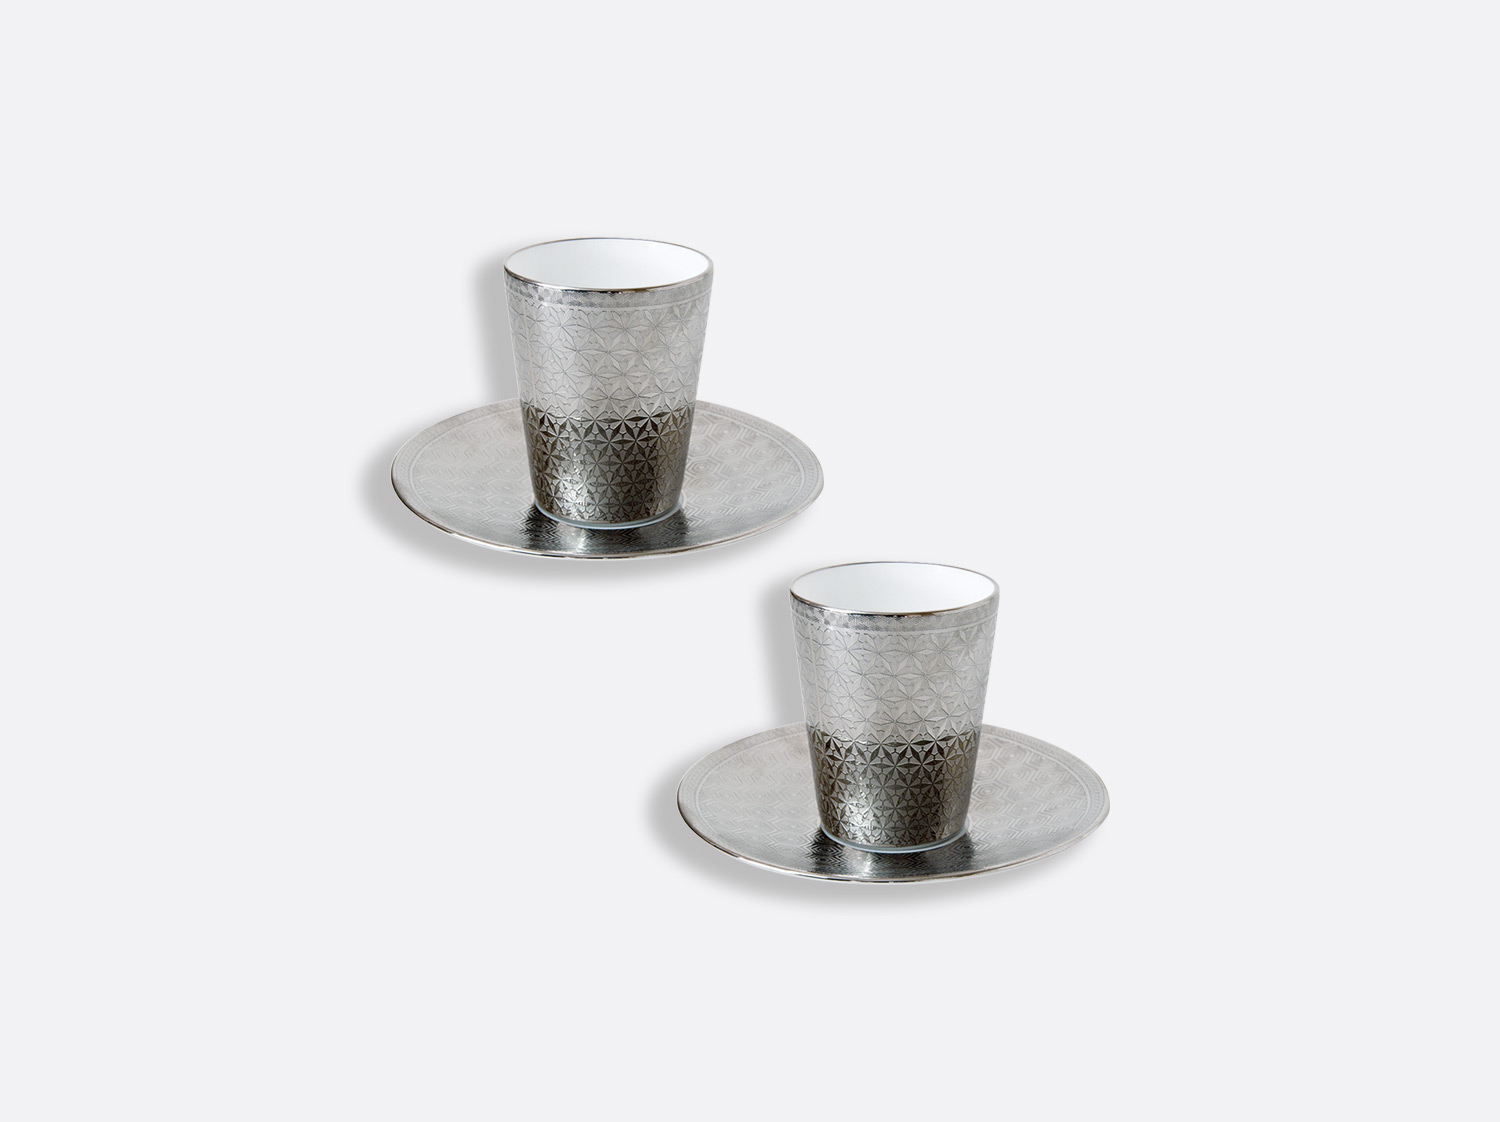 Bernardaud in Bloom Espresso Cup and Saucer